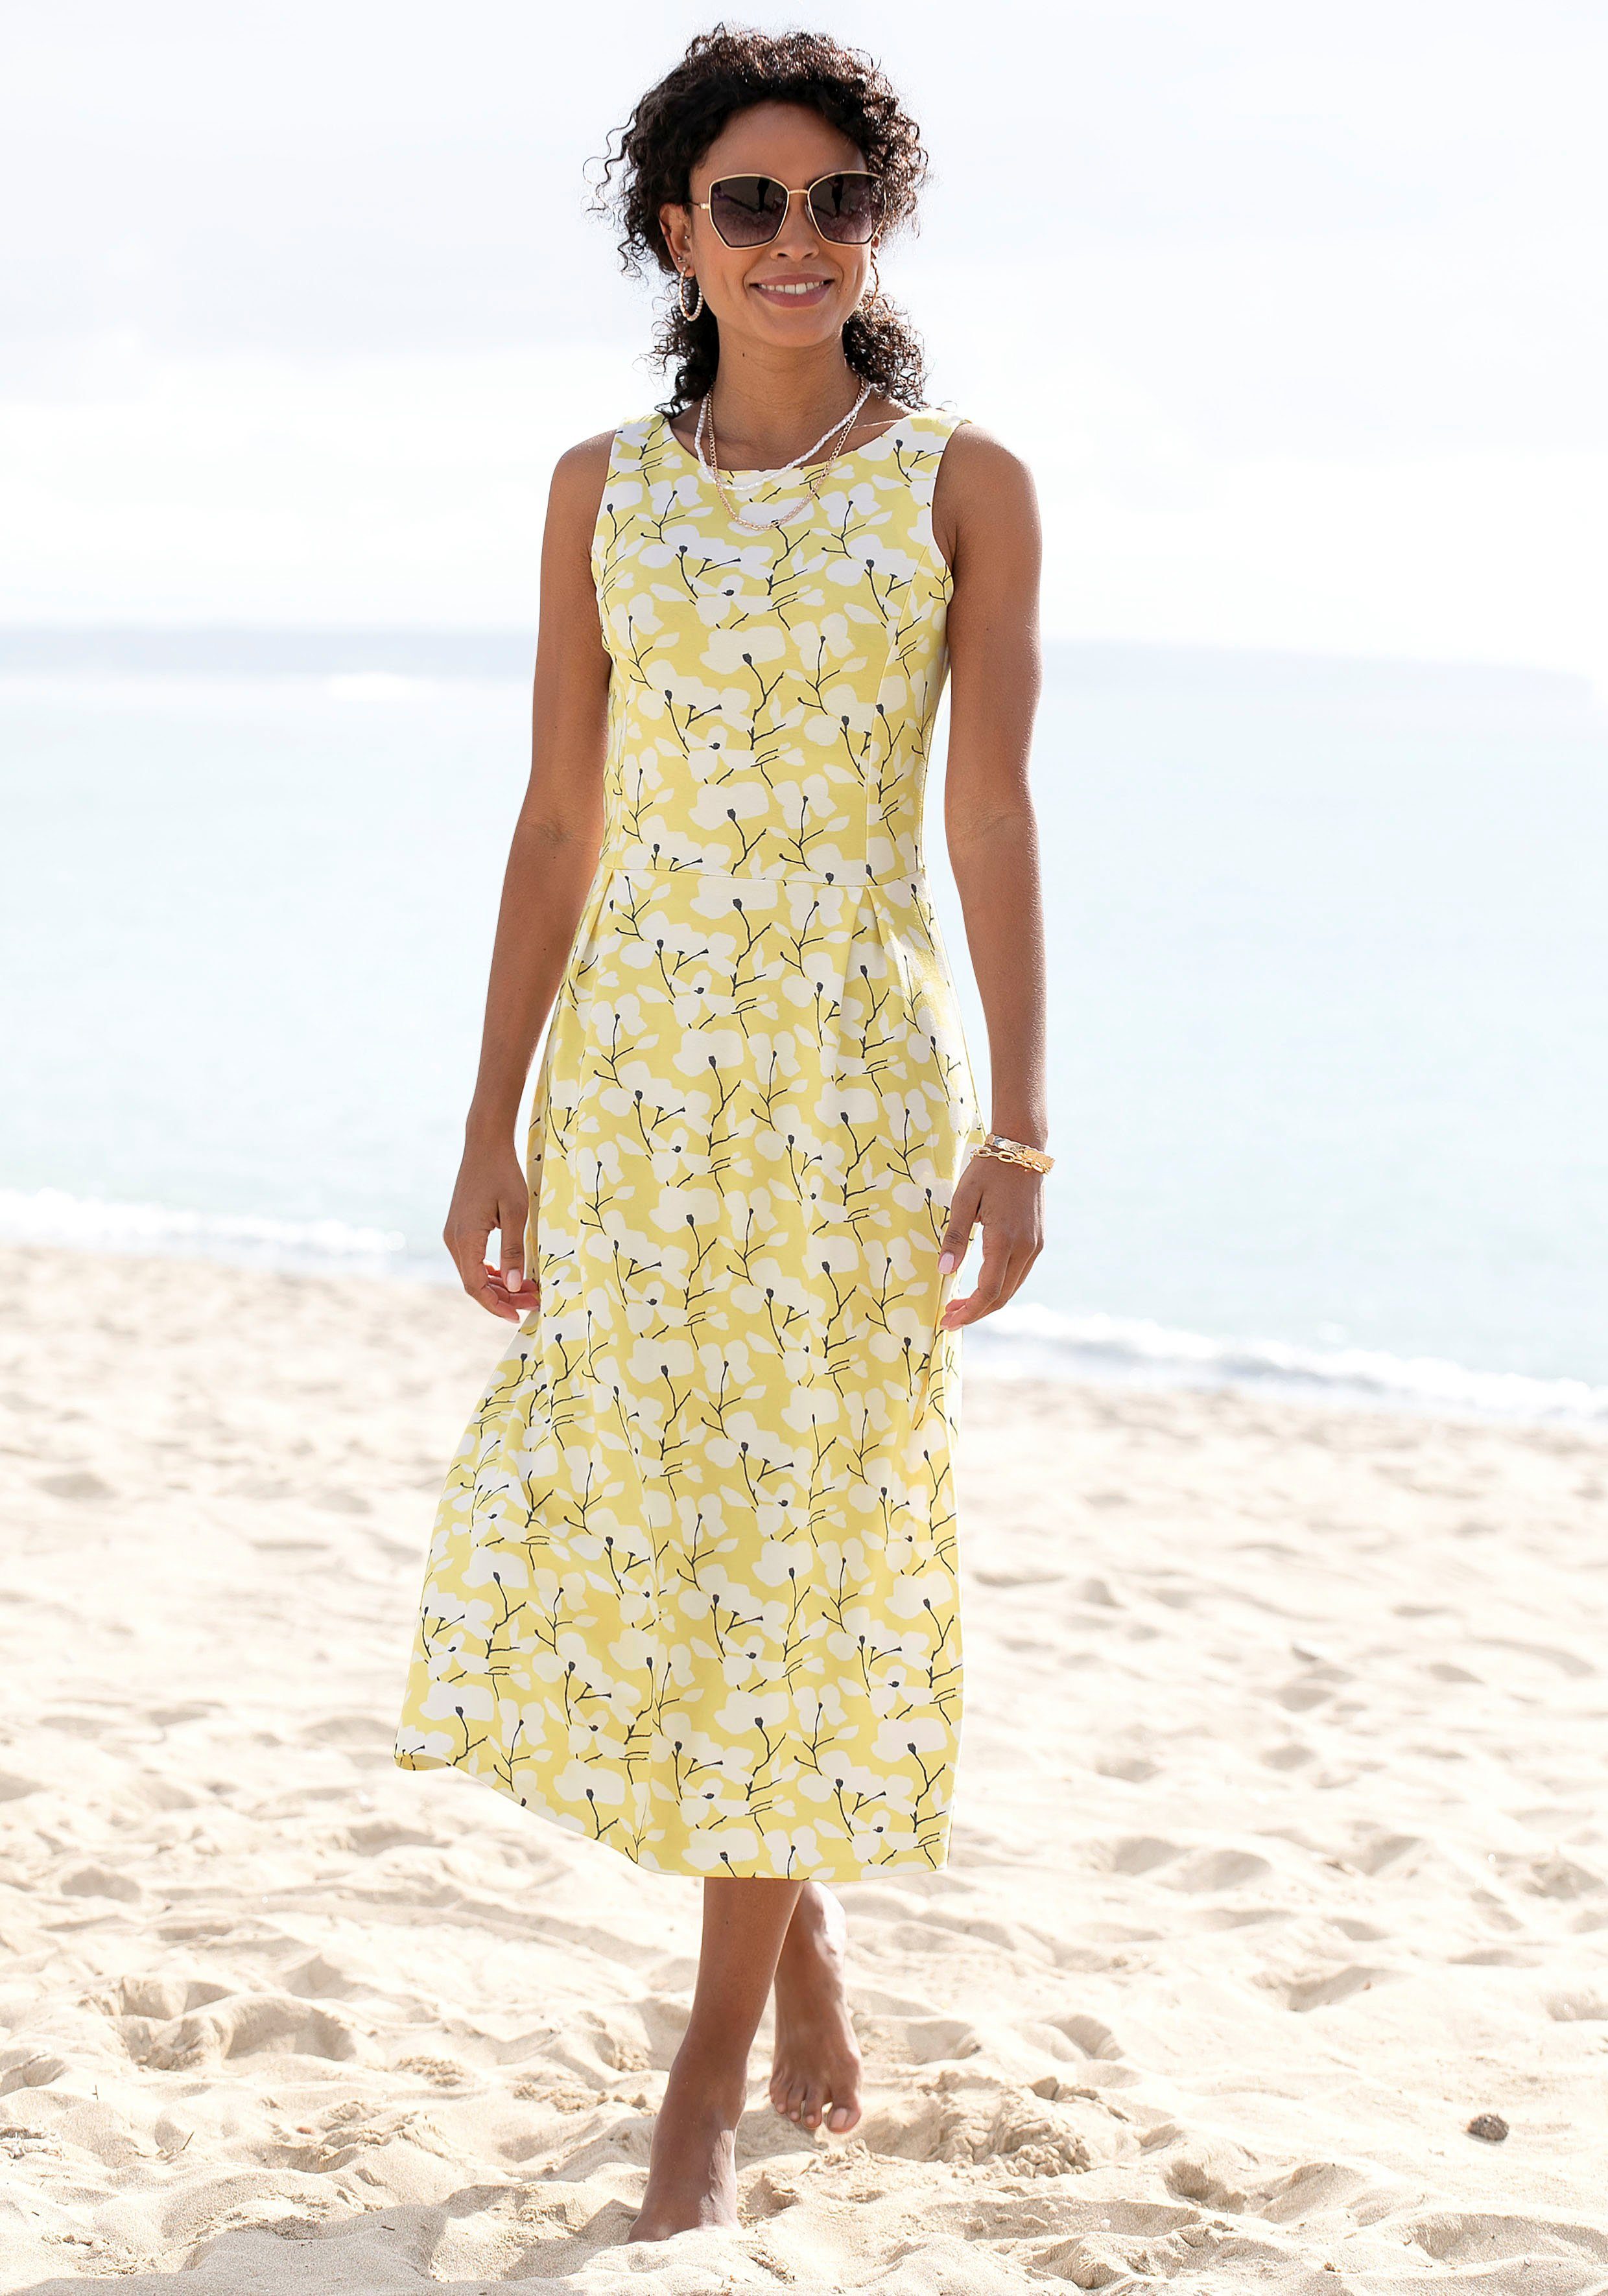 Beachtime Sommerkleid mit Blumendruck, Strandmode, Strandbekleidung gelb-creme-bedruckt | Strandkleider